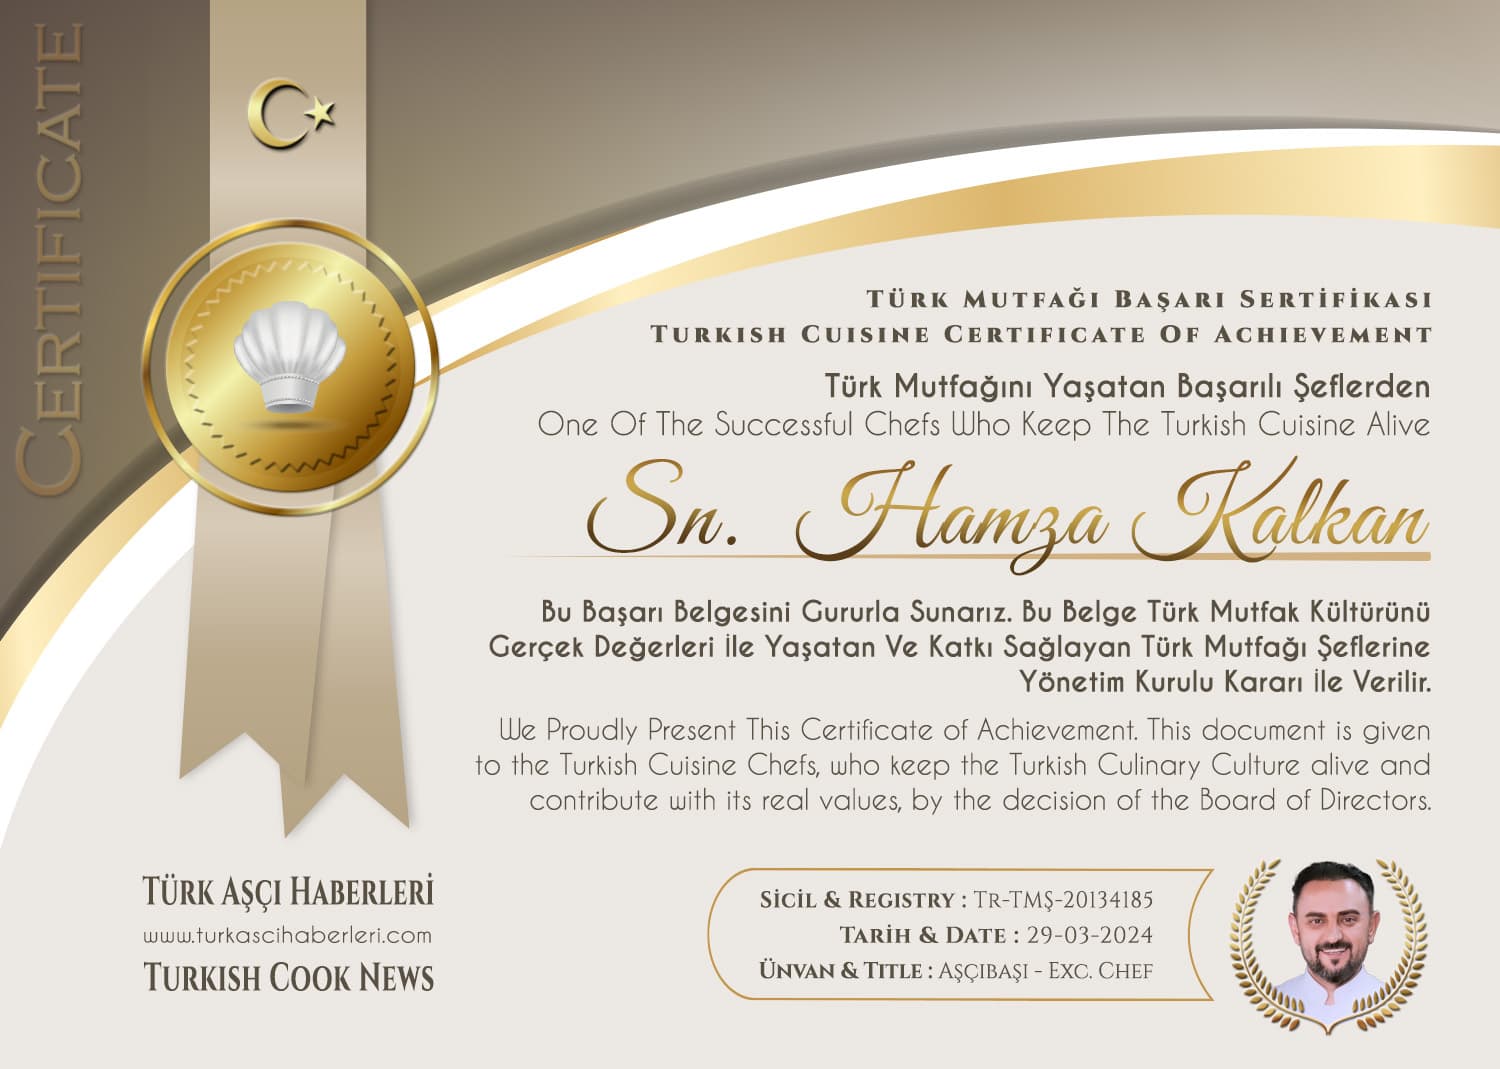 Türk Mutfağı Şeflerinden Hamza Kalkan'a Özel Ödül